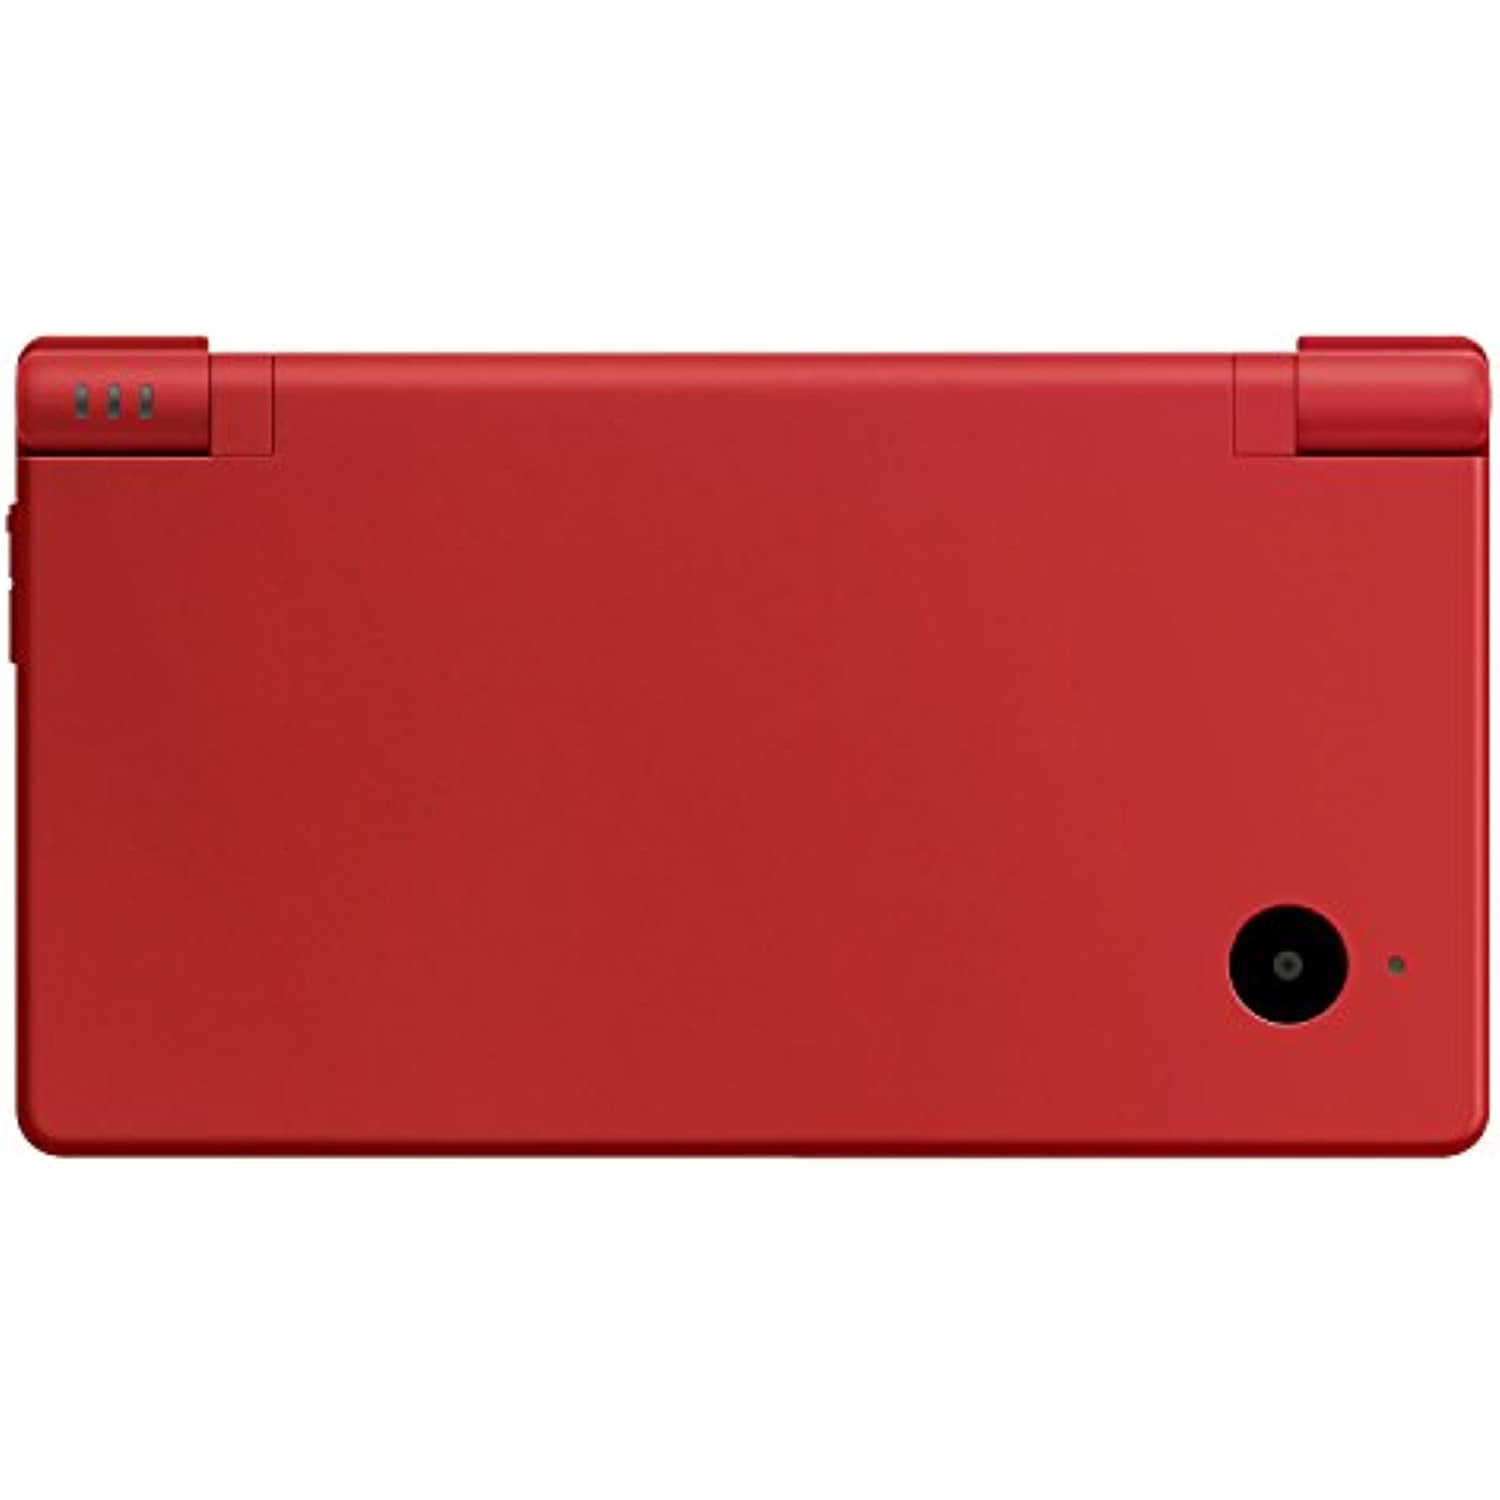 Nintendo DSi - Matte Red